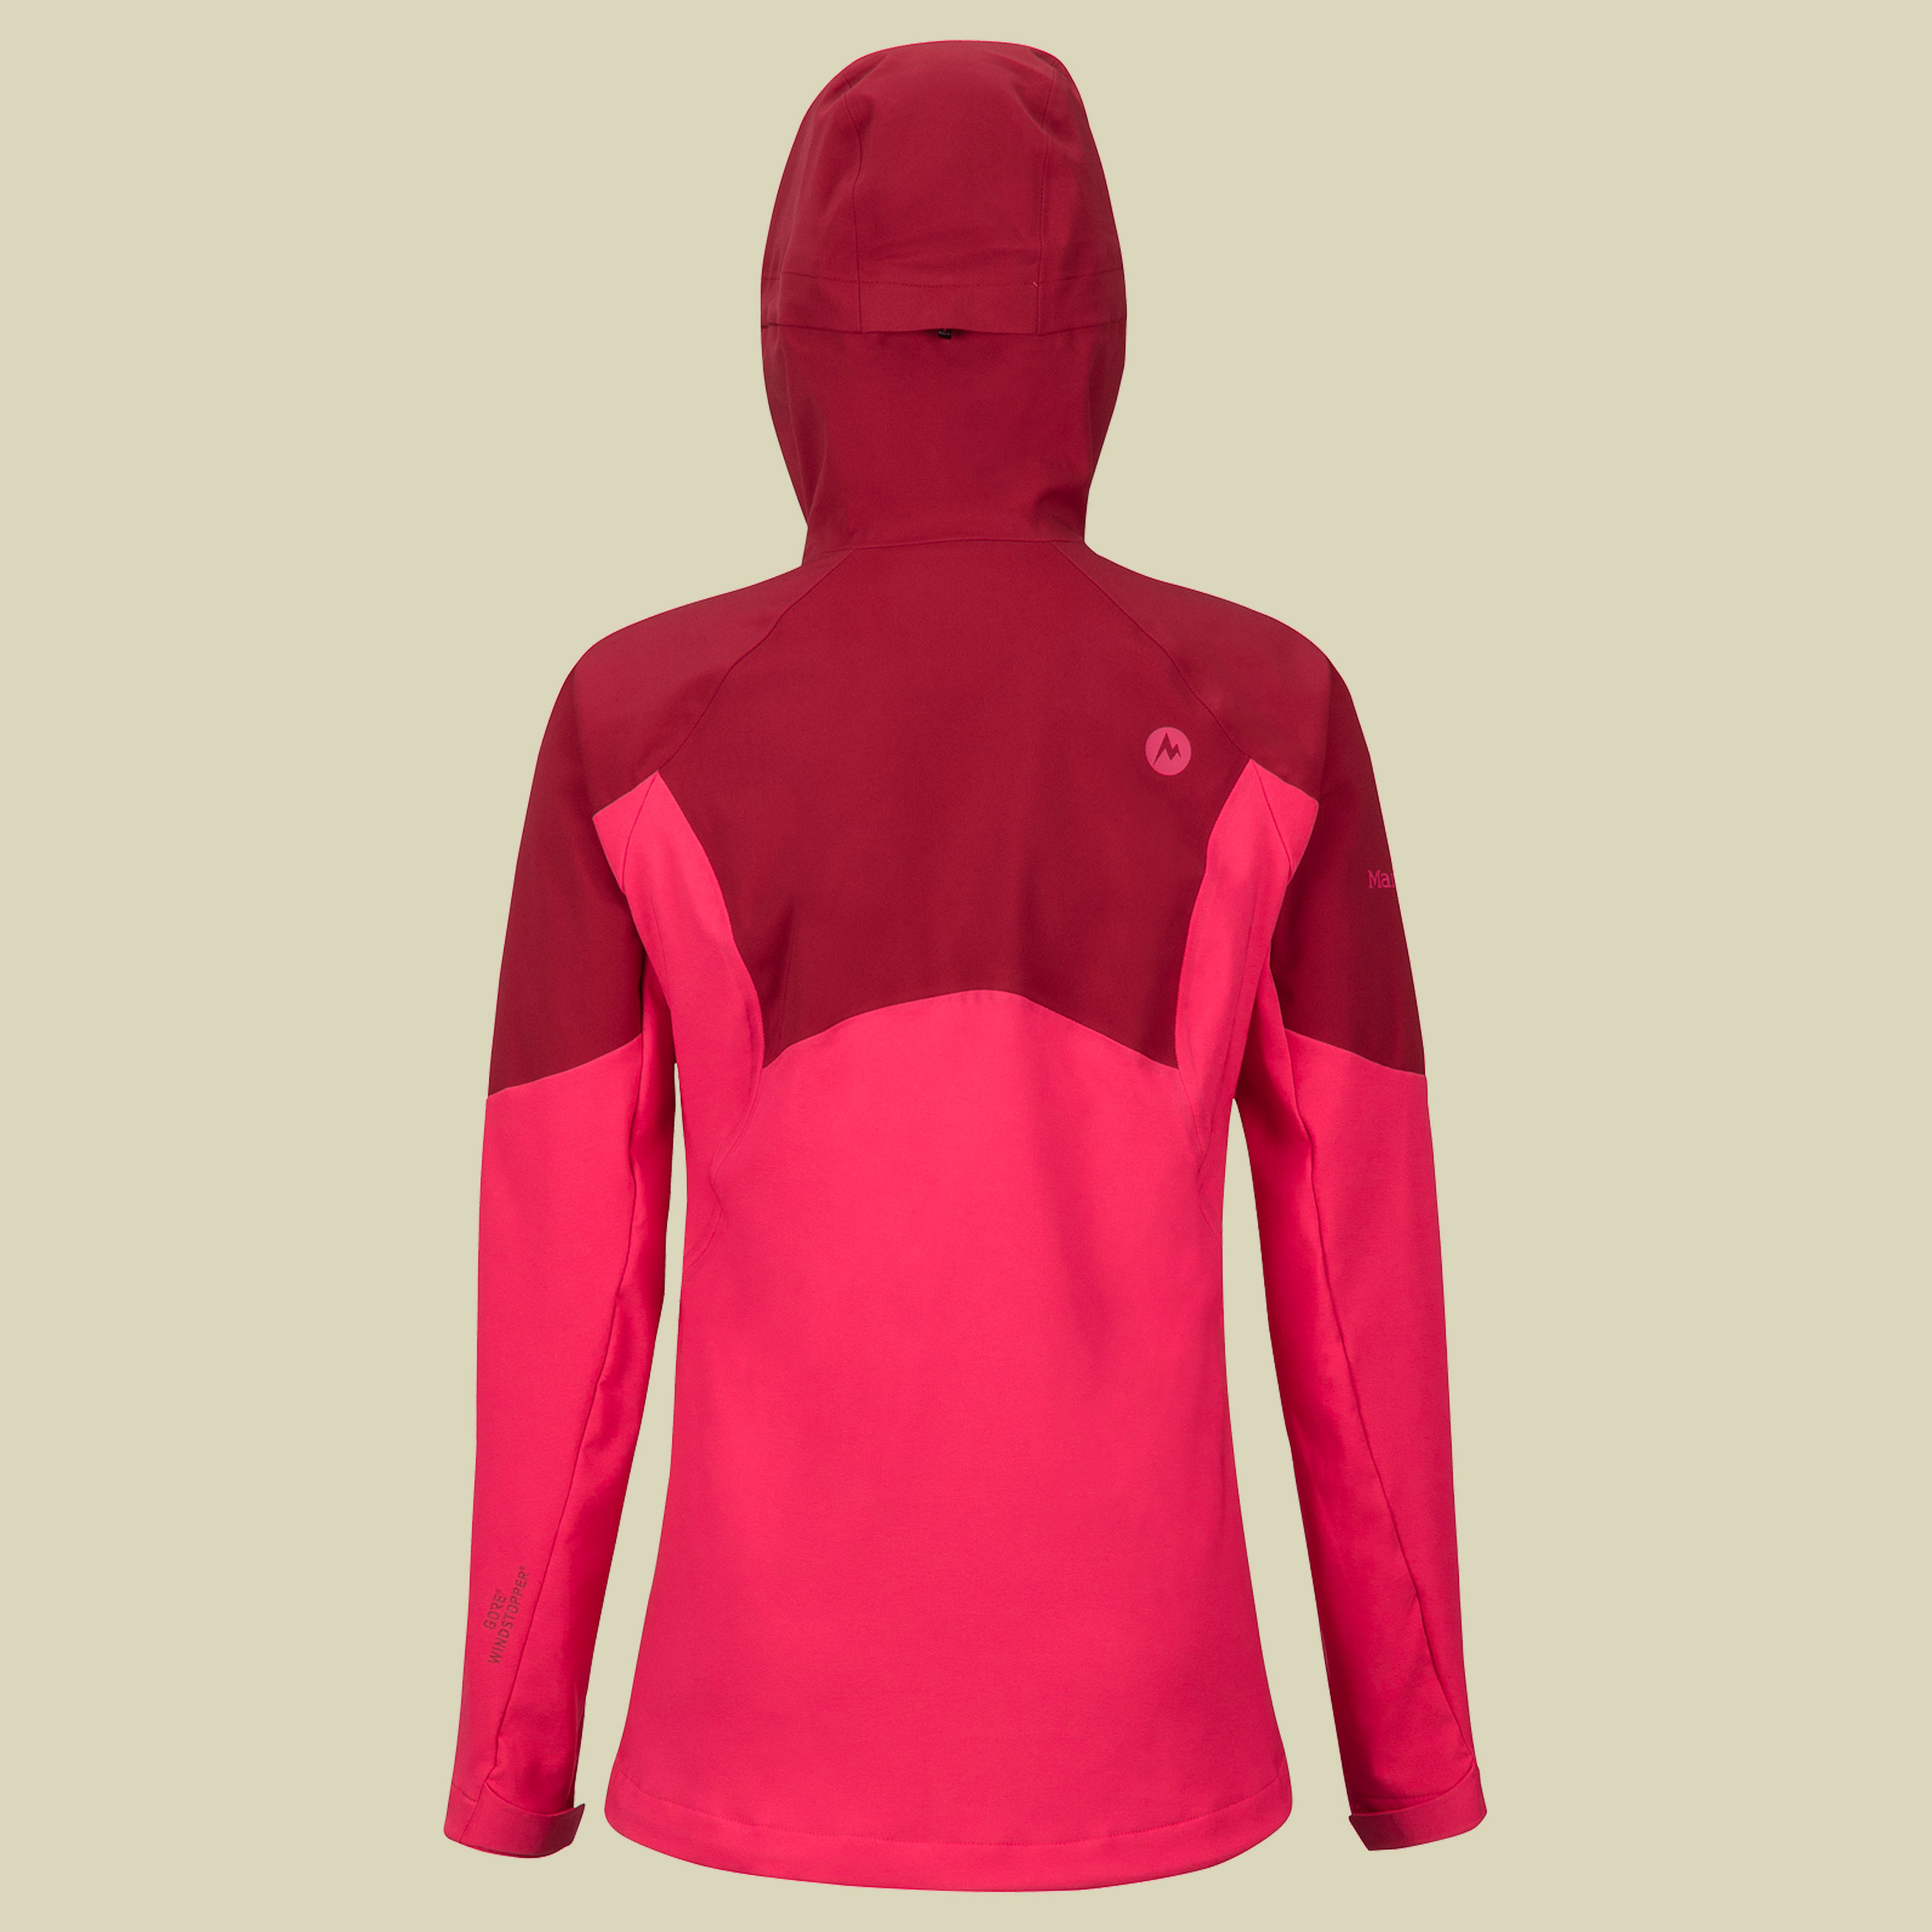 ROM Jacket Women Größe XS Farbe sienna red/disco pink